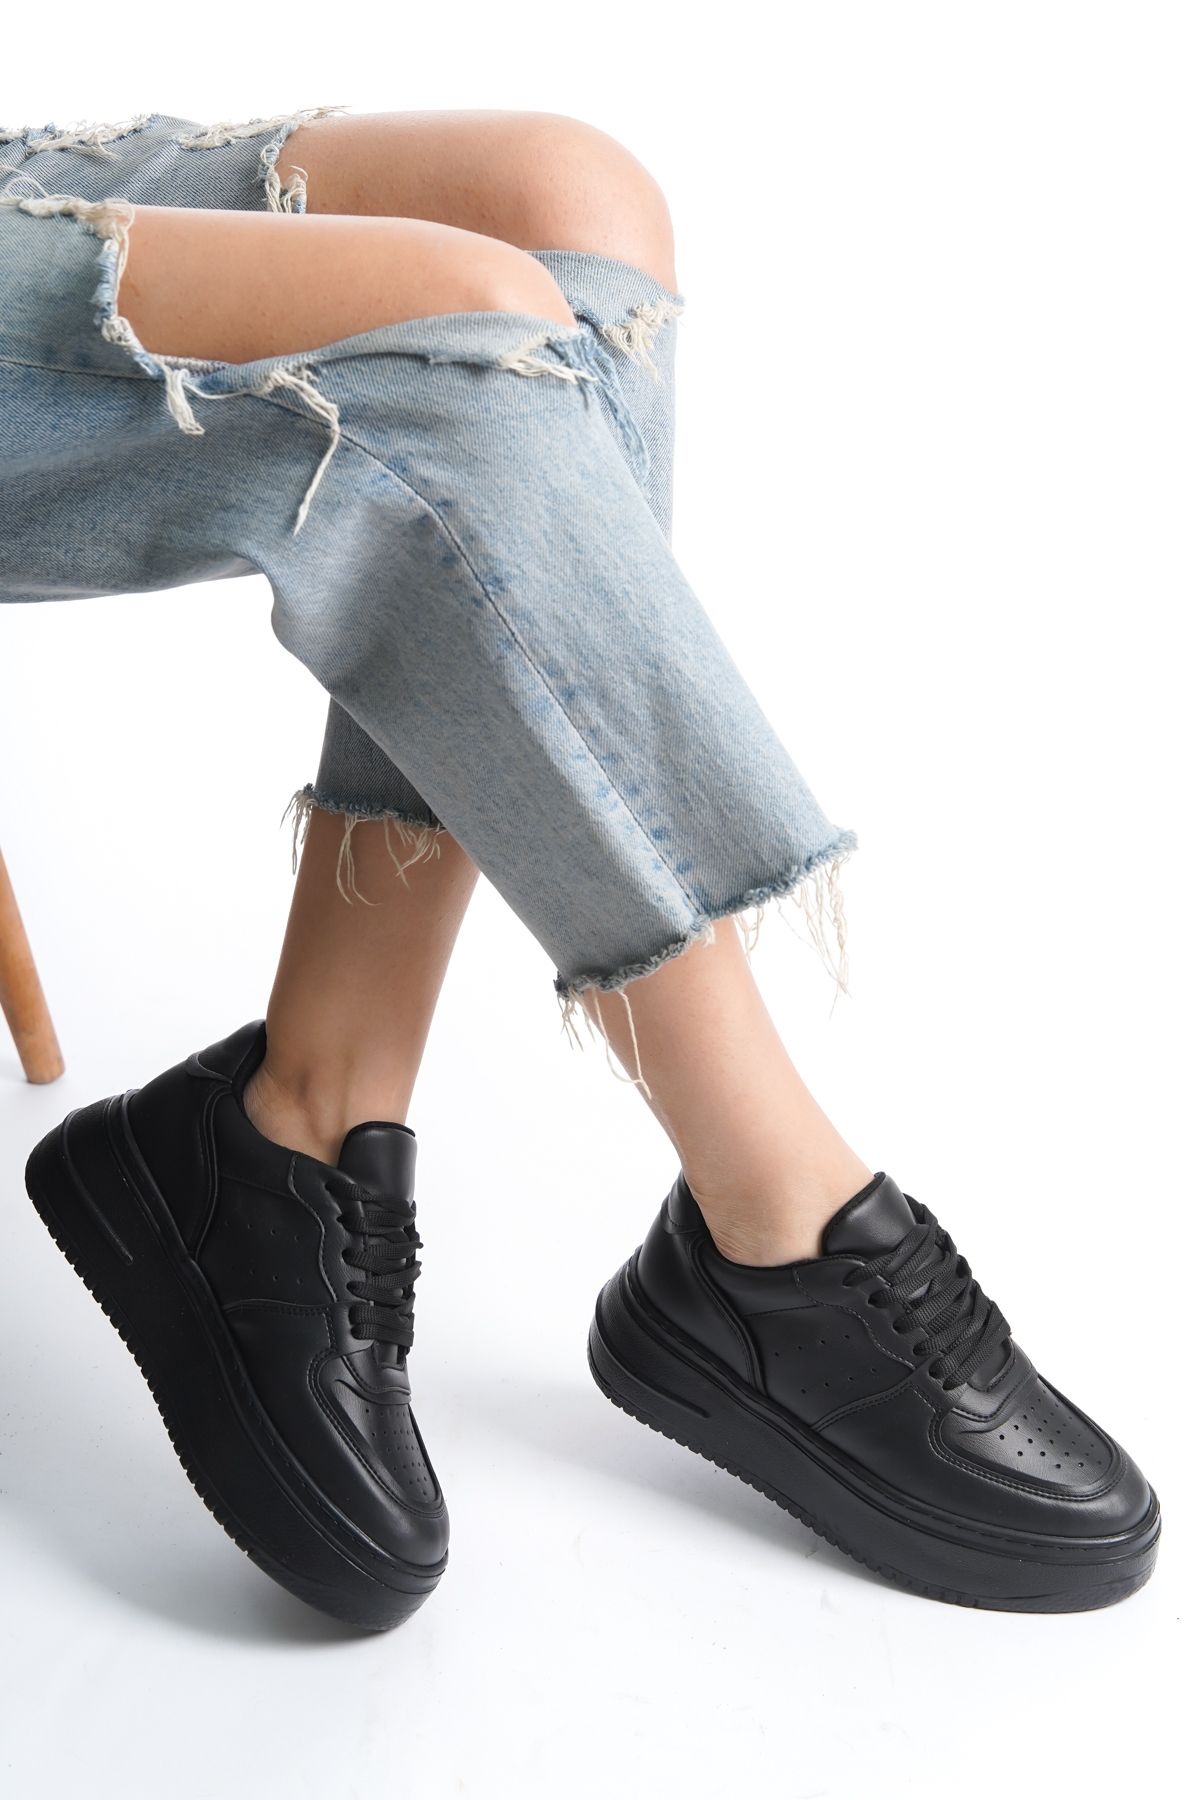 NexaNook Kadın Sneaker Bağcıklı Yüksek Taban Siyah Spor Ayakkabı